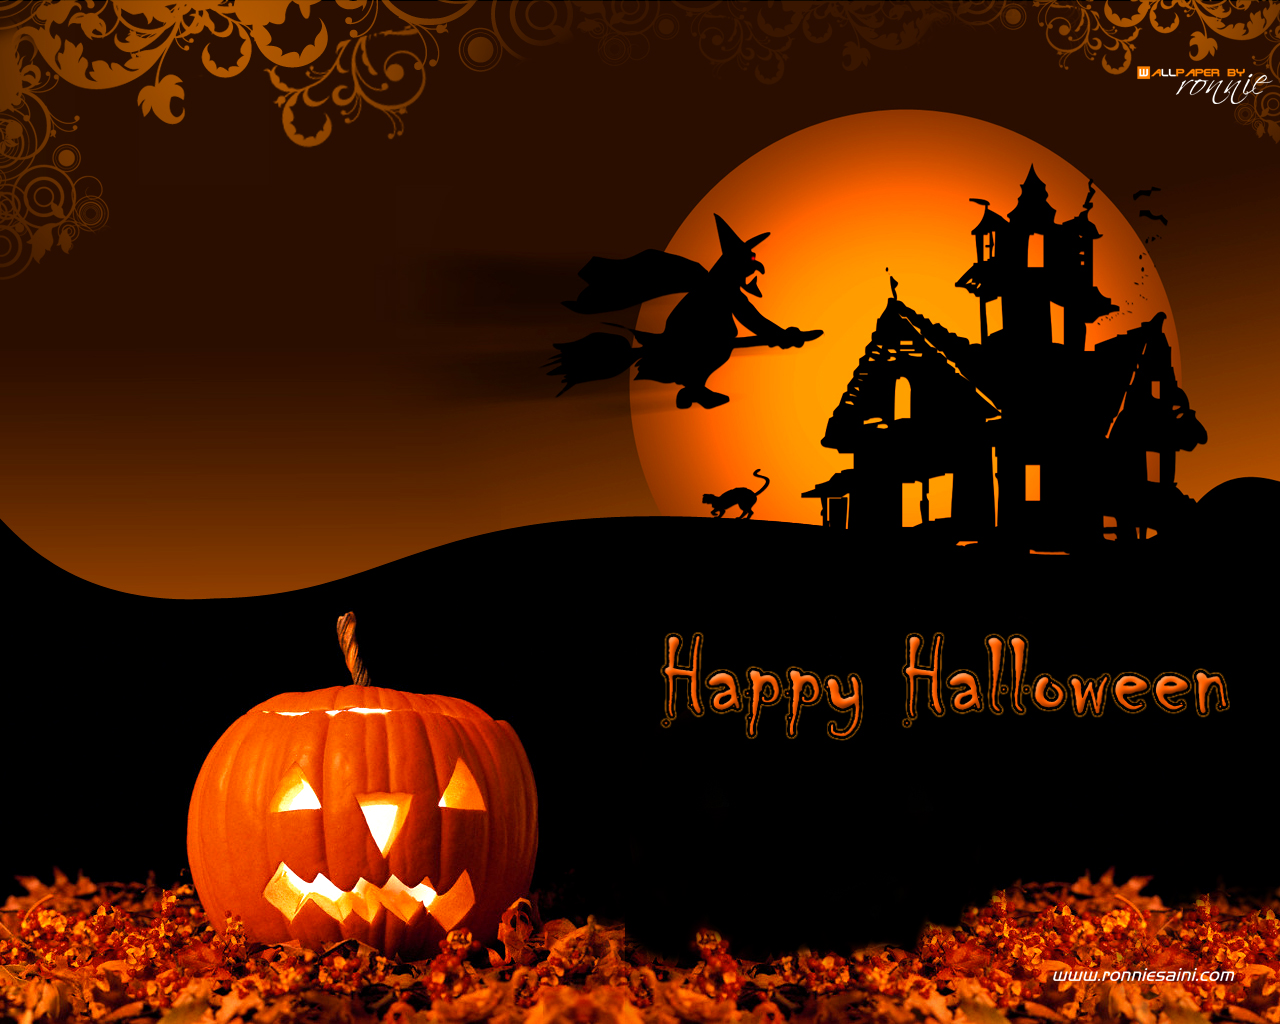 HD Halloween Wallpaper Desktop Image Amp Pictures Becuo